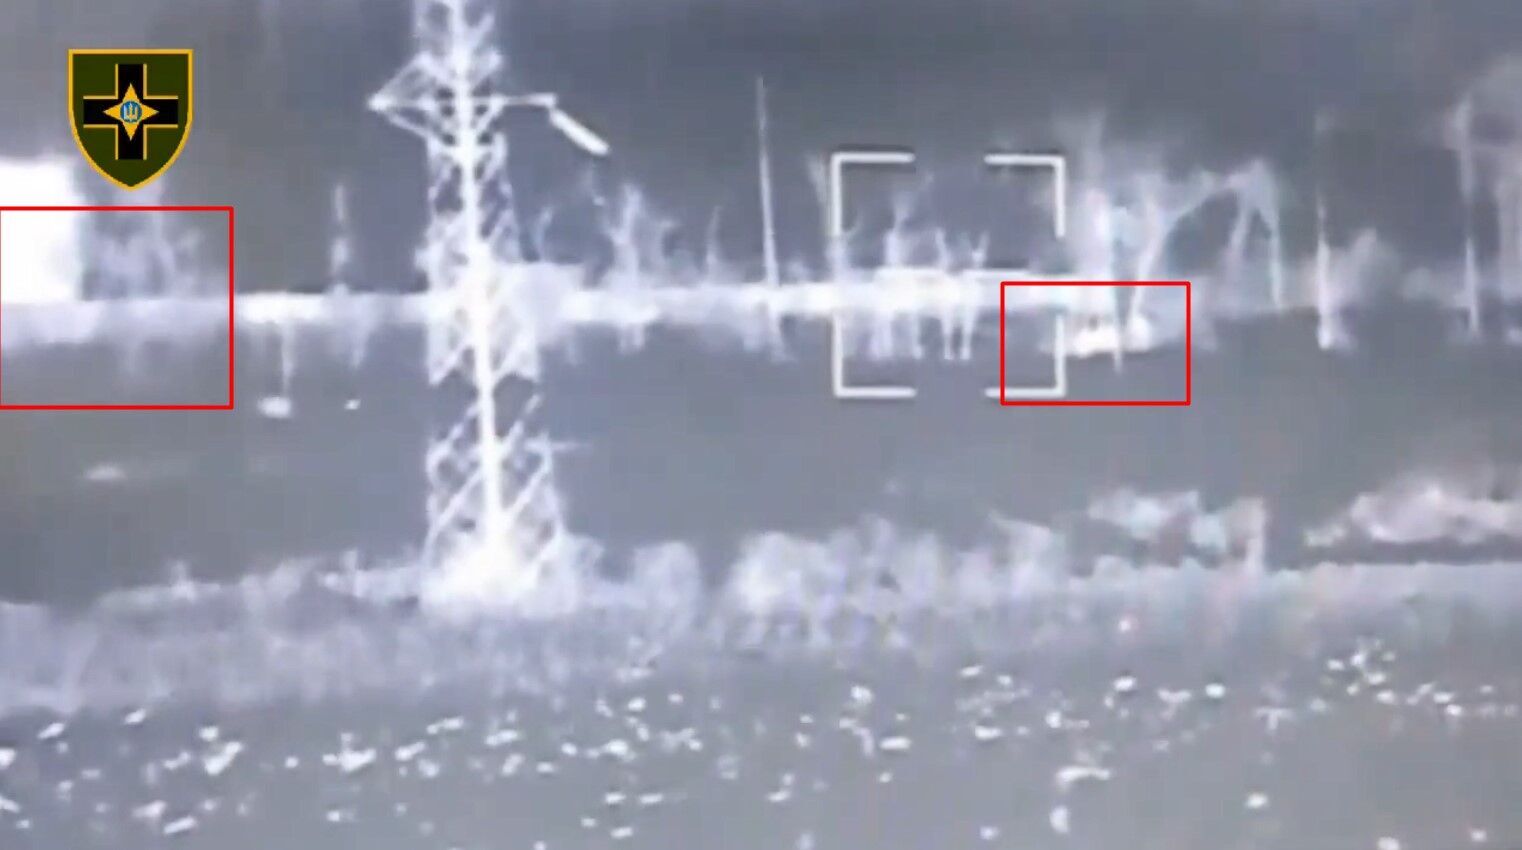 ВСУ уничтожили бронетехнику армии рф из орудия МТ-12 ''Рапира'': детали спецоперации - на видео